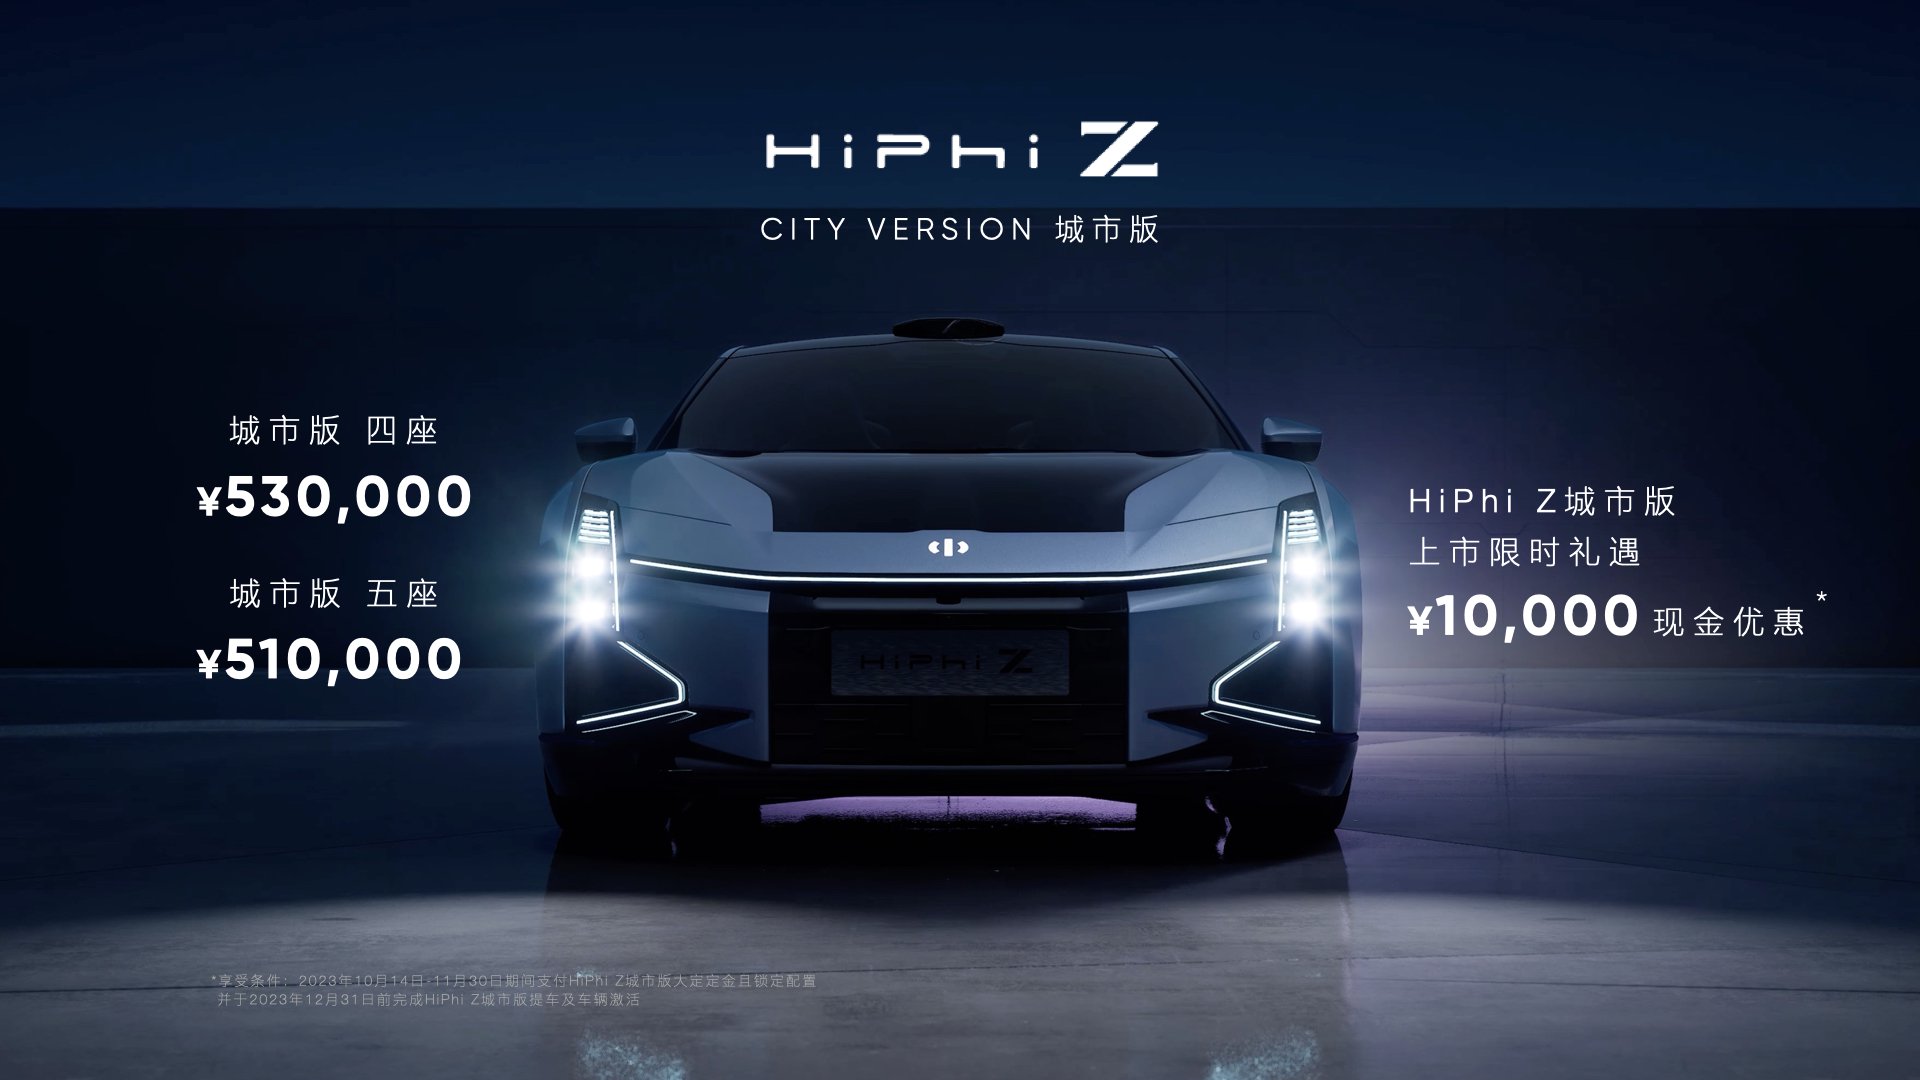 高合HiPhi Z城市版售51-53万元上市